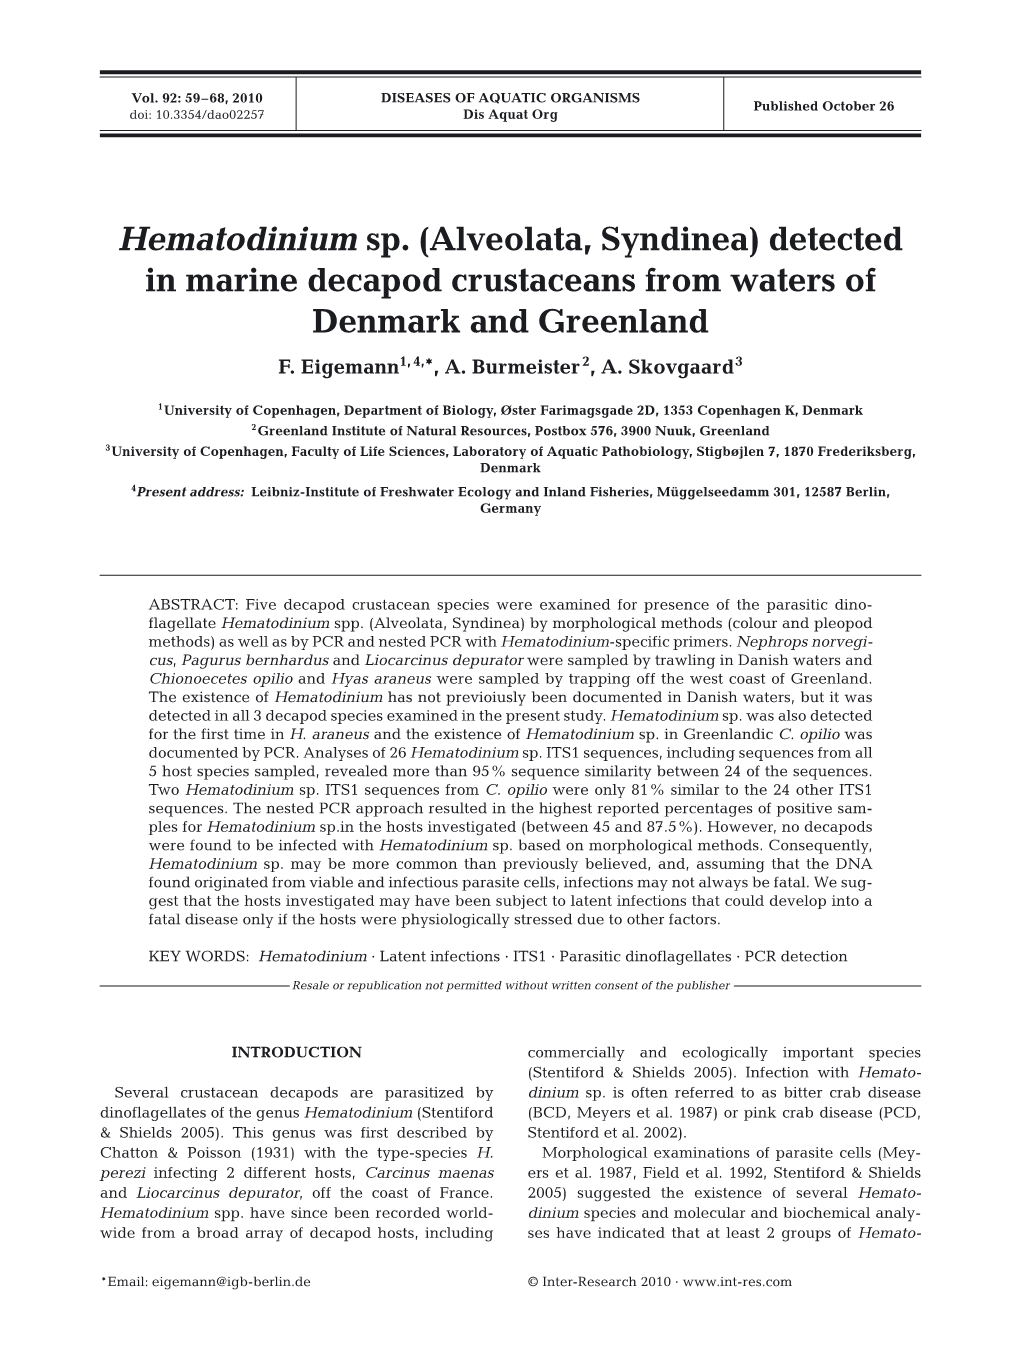 Hematodinium Sp.(Alveolata, Syndinea) Detected in Marine